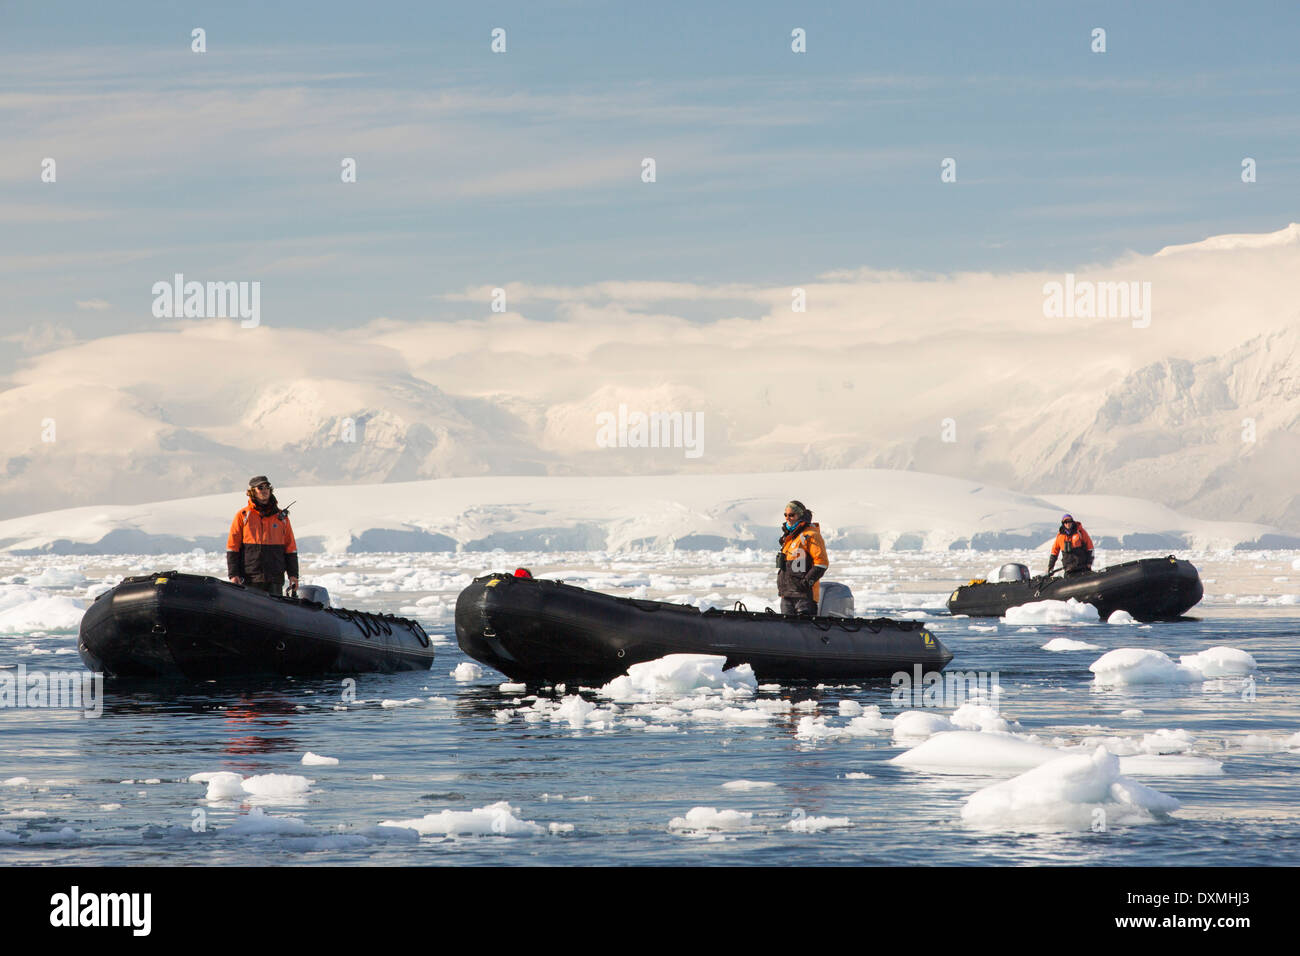 Les membres d'une croisière expédition en Antarctique dans un Zodiak dans Fournier Bay dans le détroit de Gerlache sur la péninsule antarctique. Banque D'Images